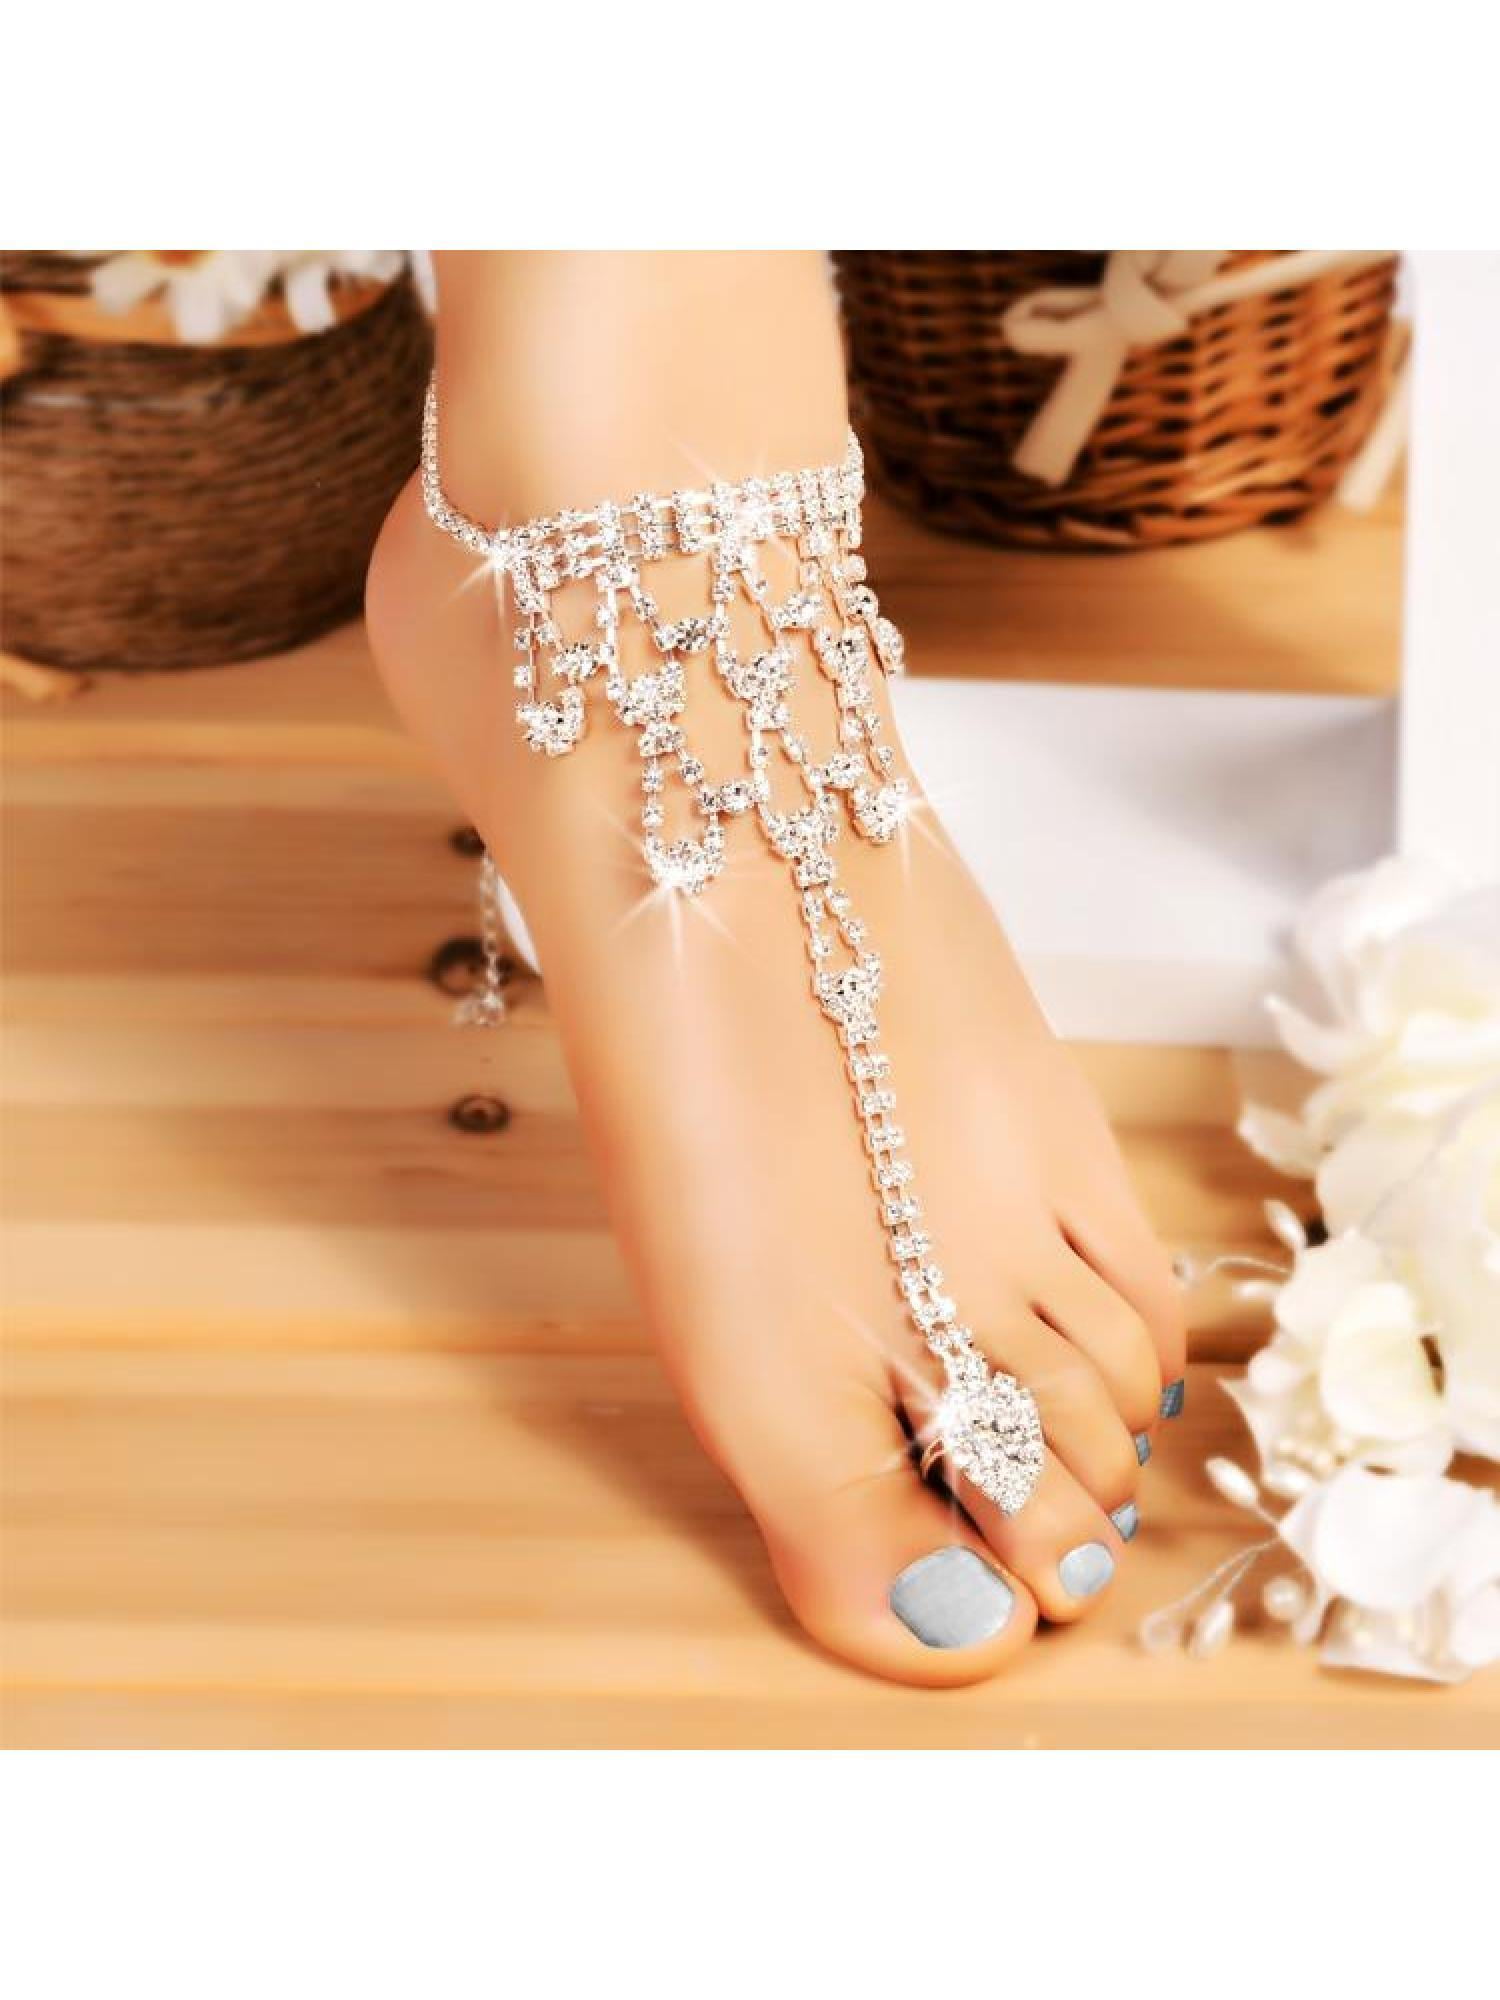 Pearl Barefoot Sandal Anklet Foot Chain Toe Ring Beach Anklet Bracelet Women YJ 